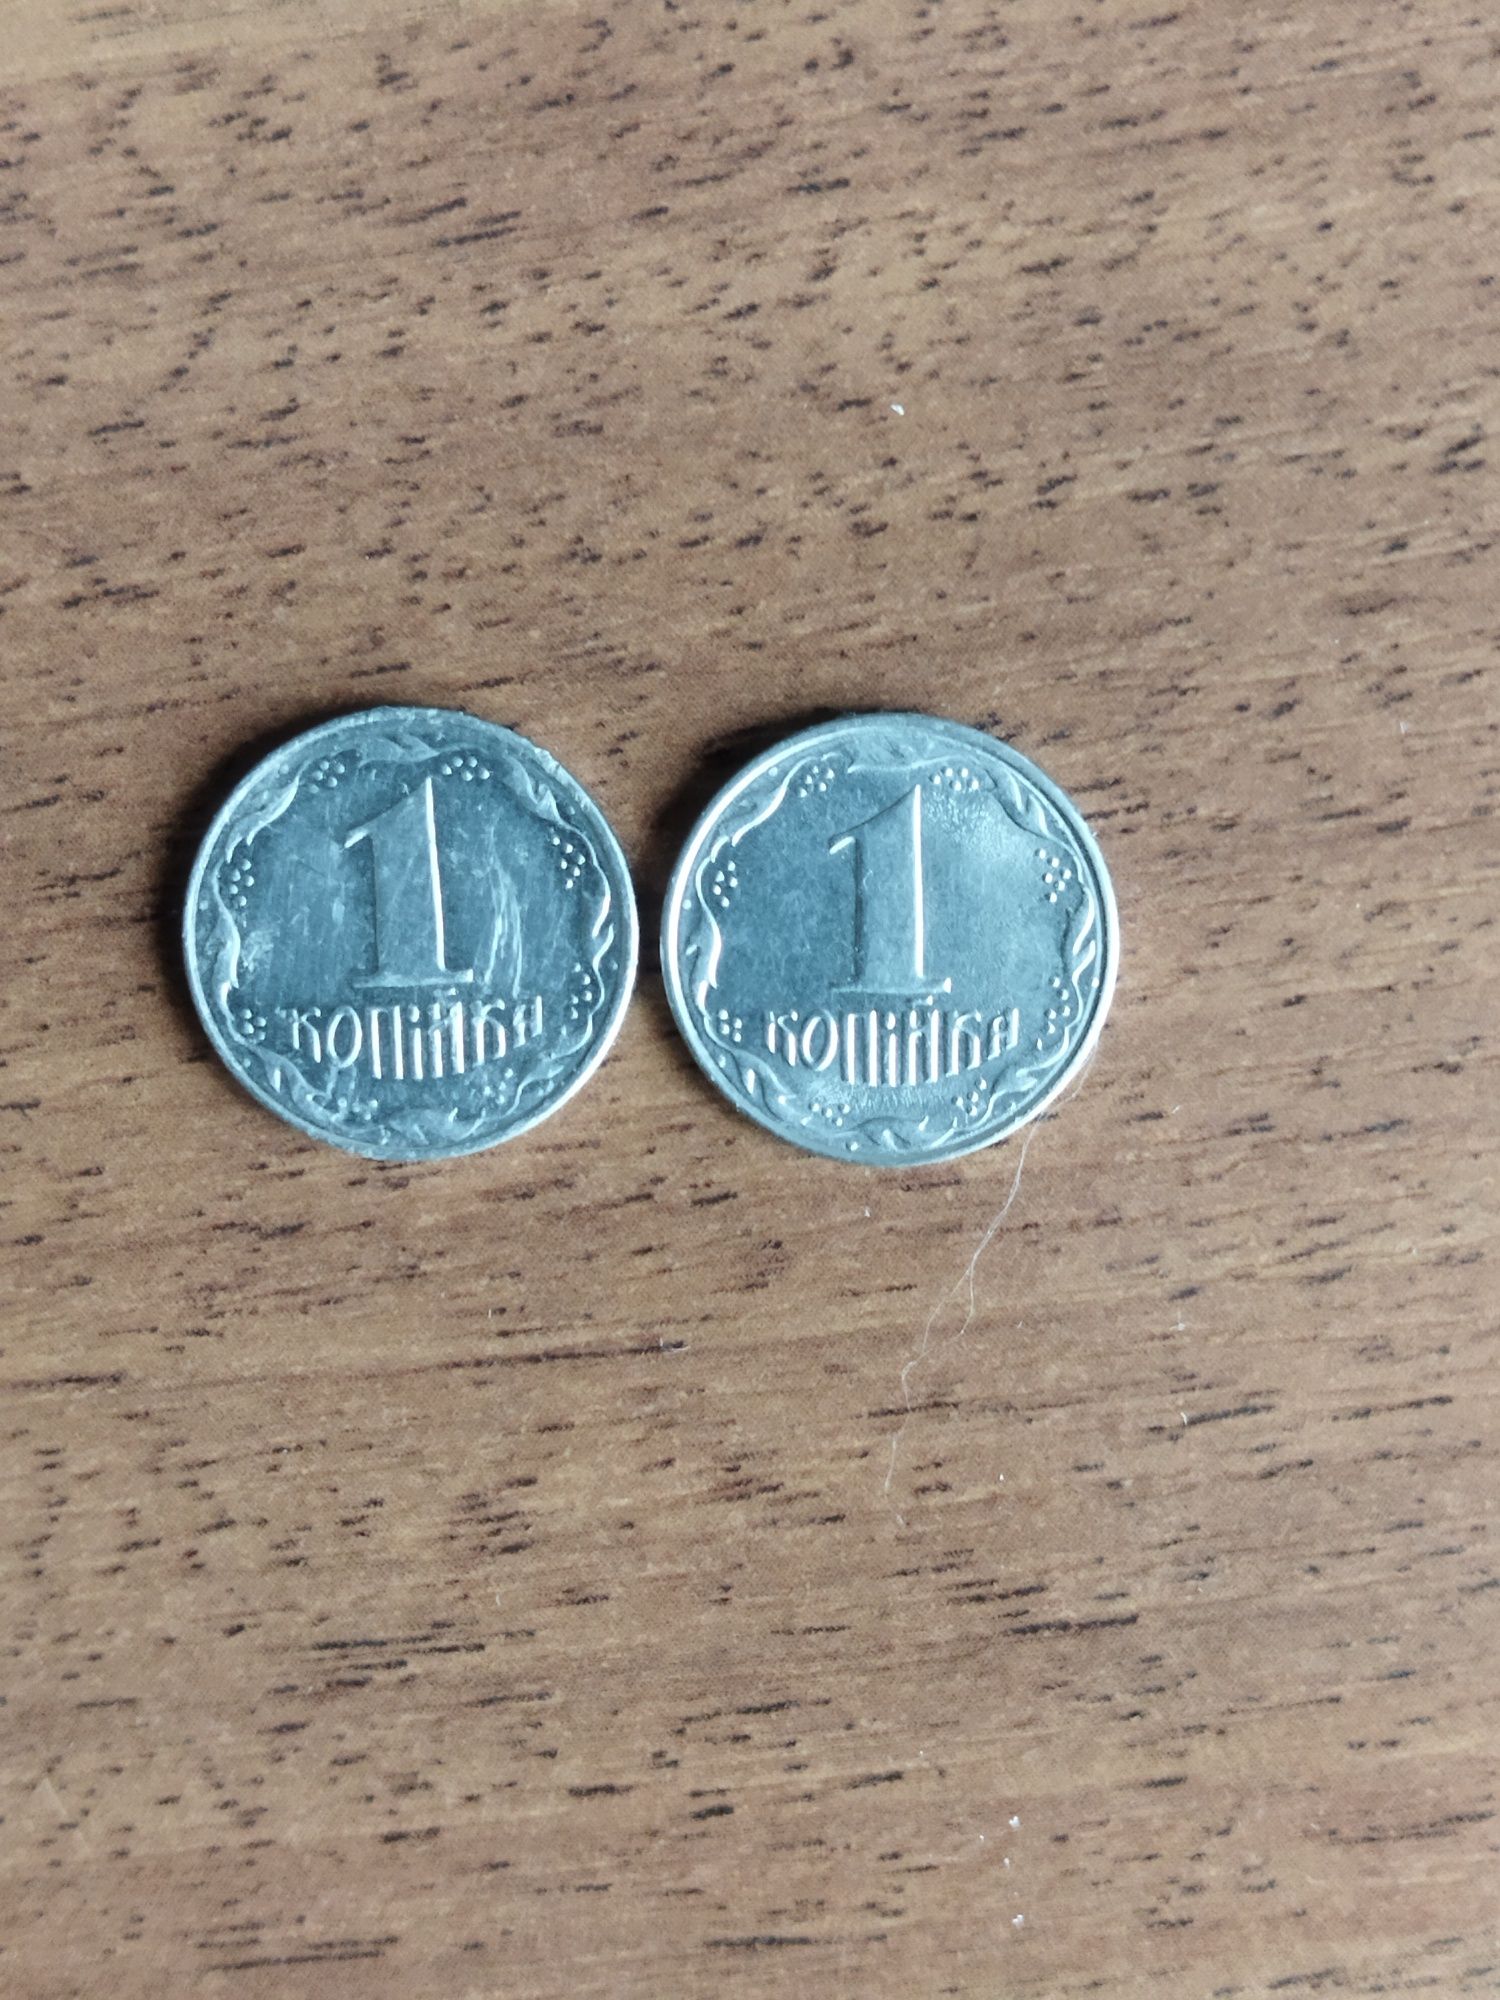 Монета номиналом,,1,, копейка 92г..1,,11,АЕ